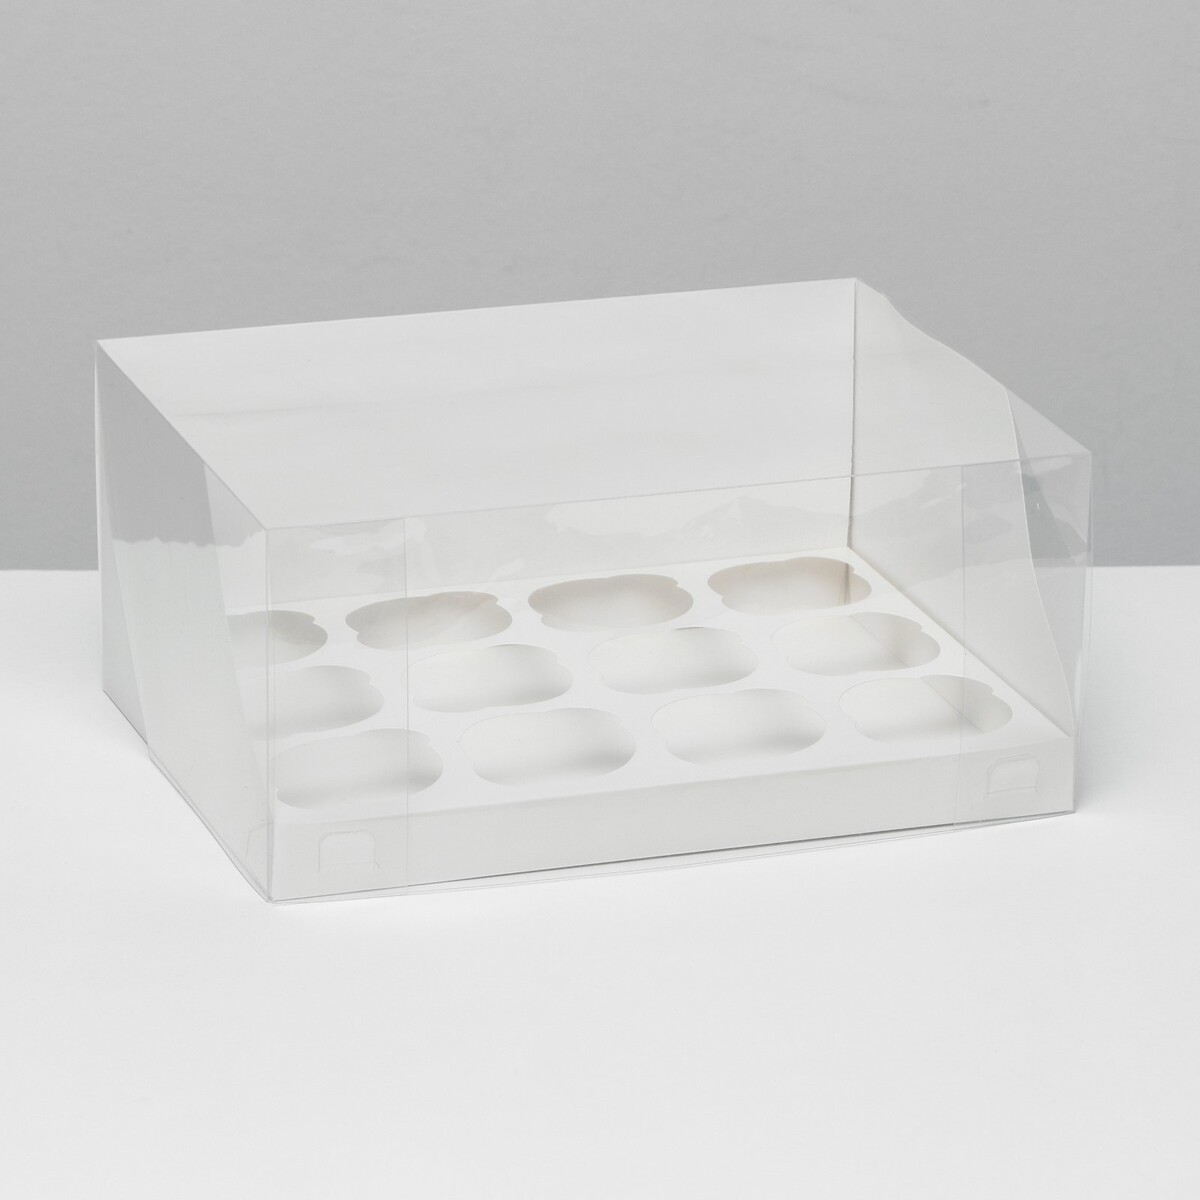 Кондитерская складная коробка для 12 капкейков белая, 31 x 24 x 14 см кондитерская складная коробка для 4 капкейков 16 х 16 х 10 красная